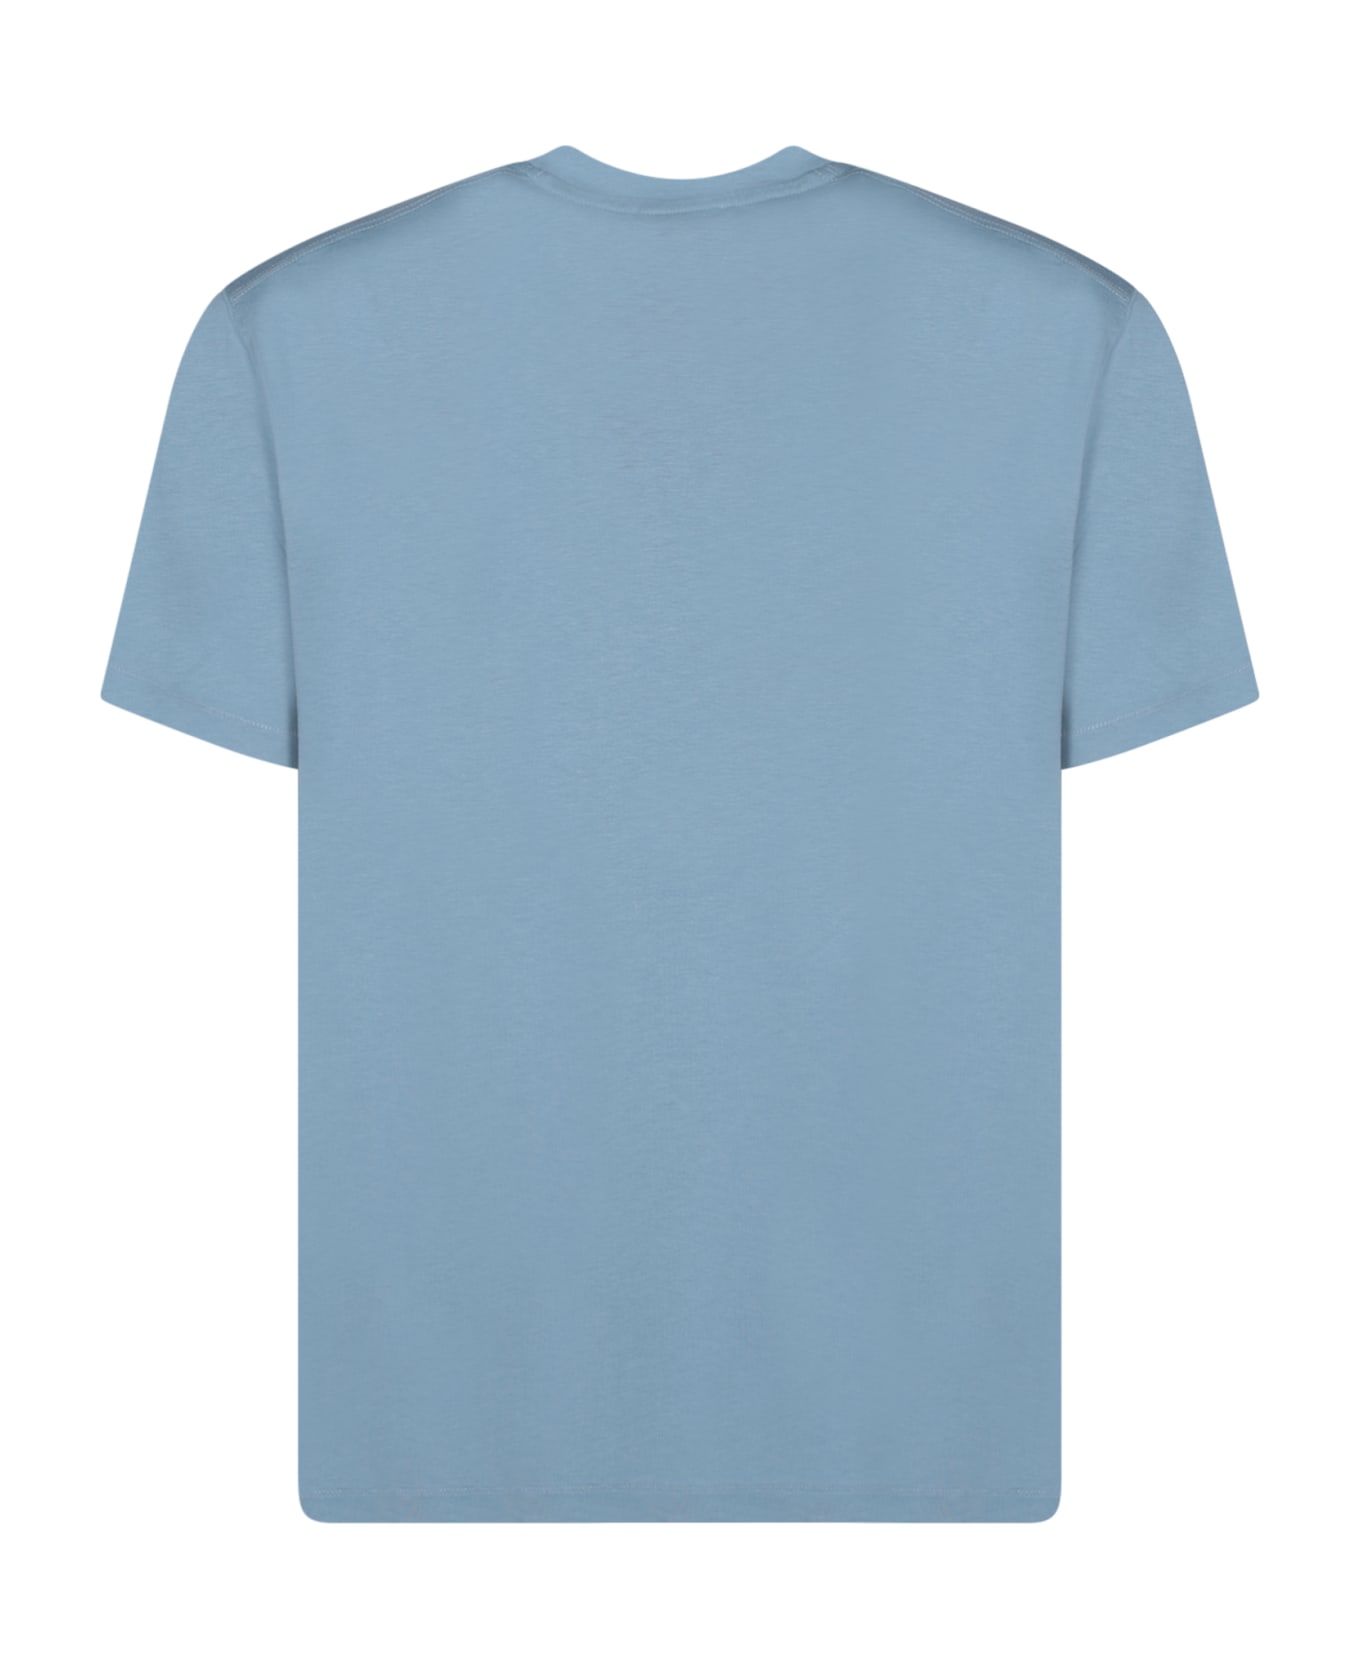 Tom Ford T-shirt - Sky Blue